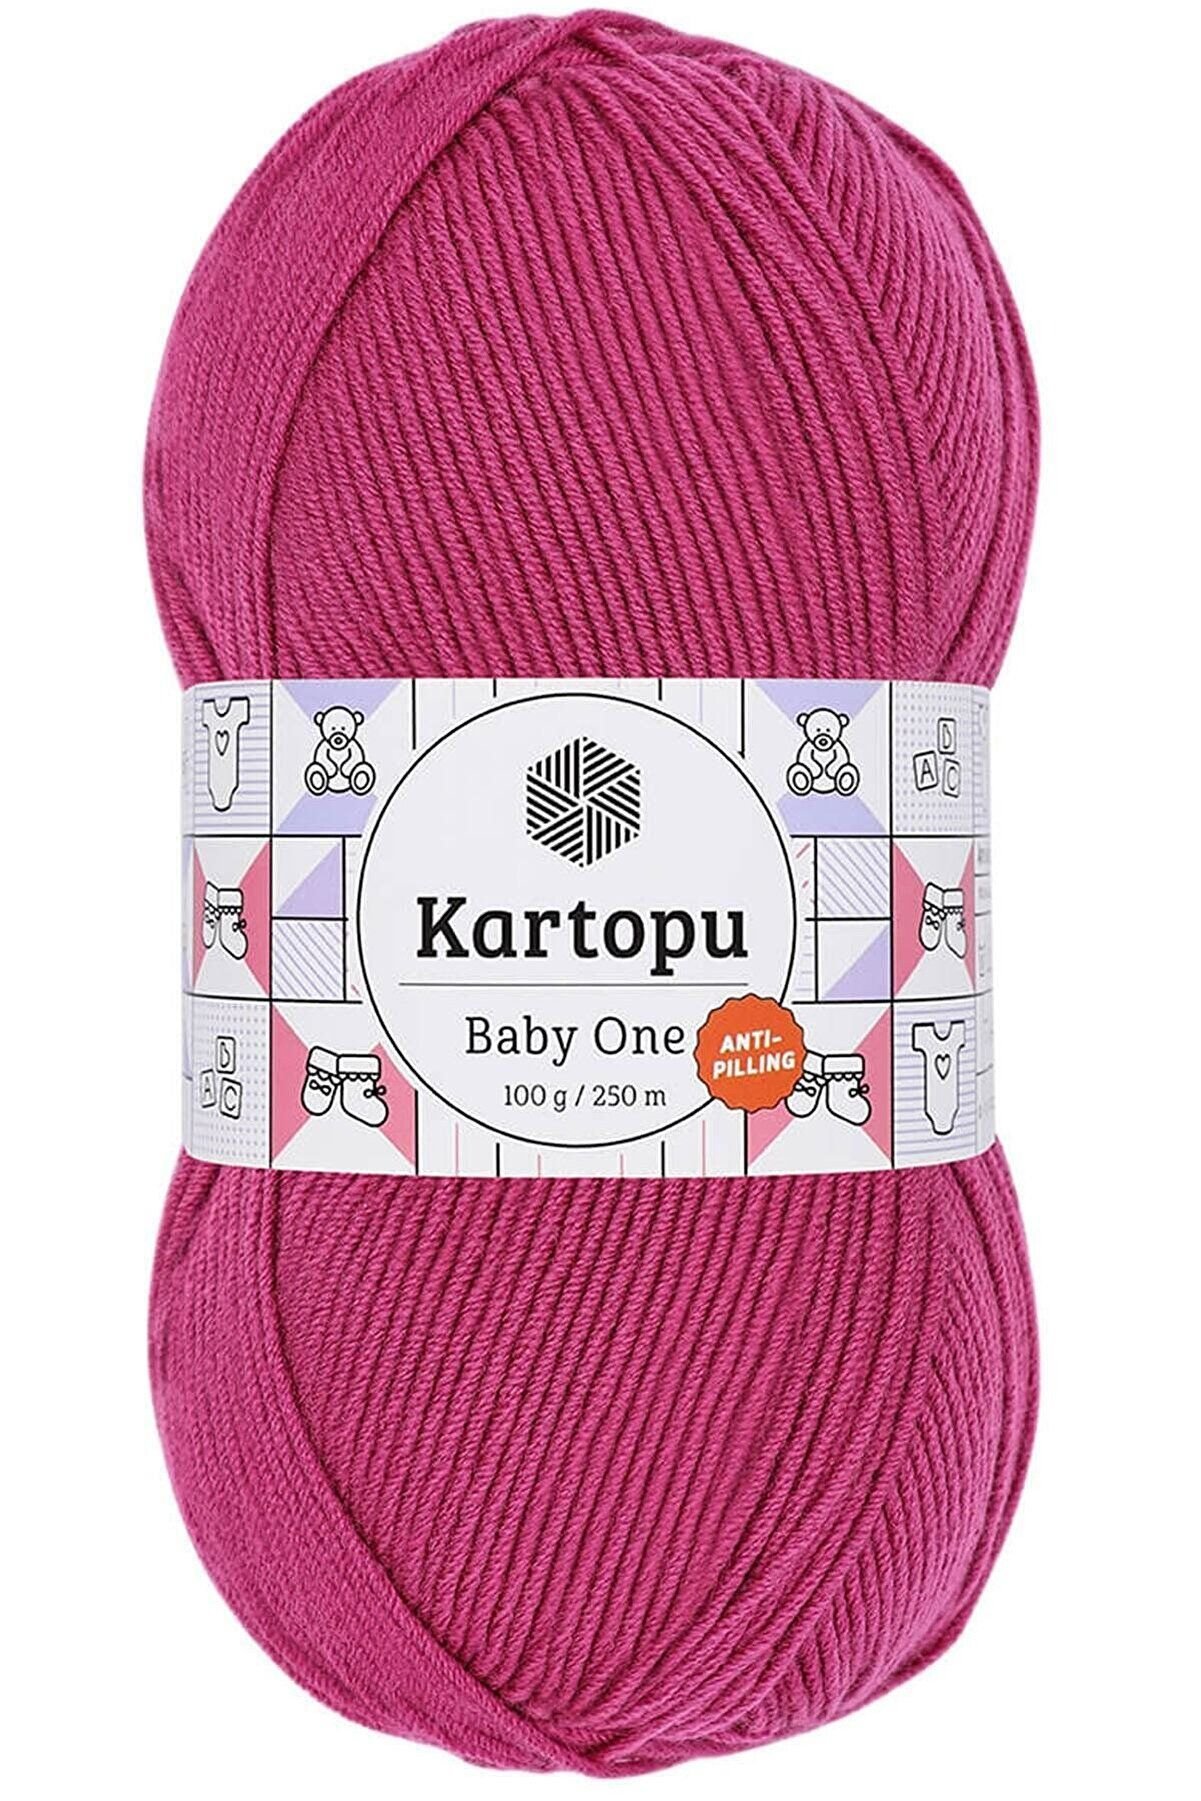 KARTOPU BABY ONE - Bebe Örgü İpi K245 FUŞYA